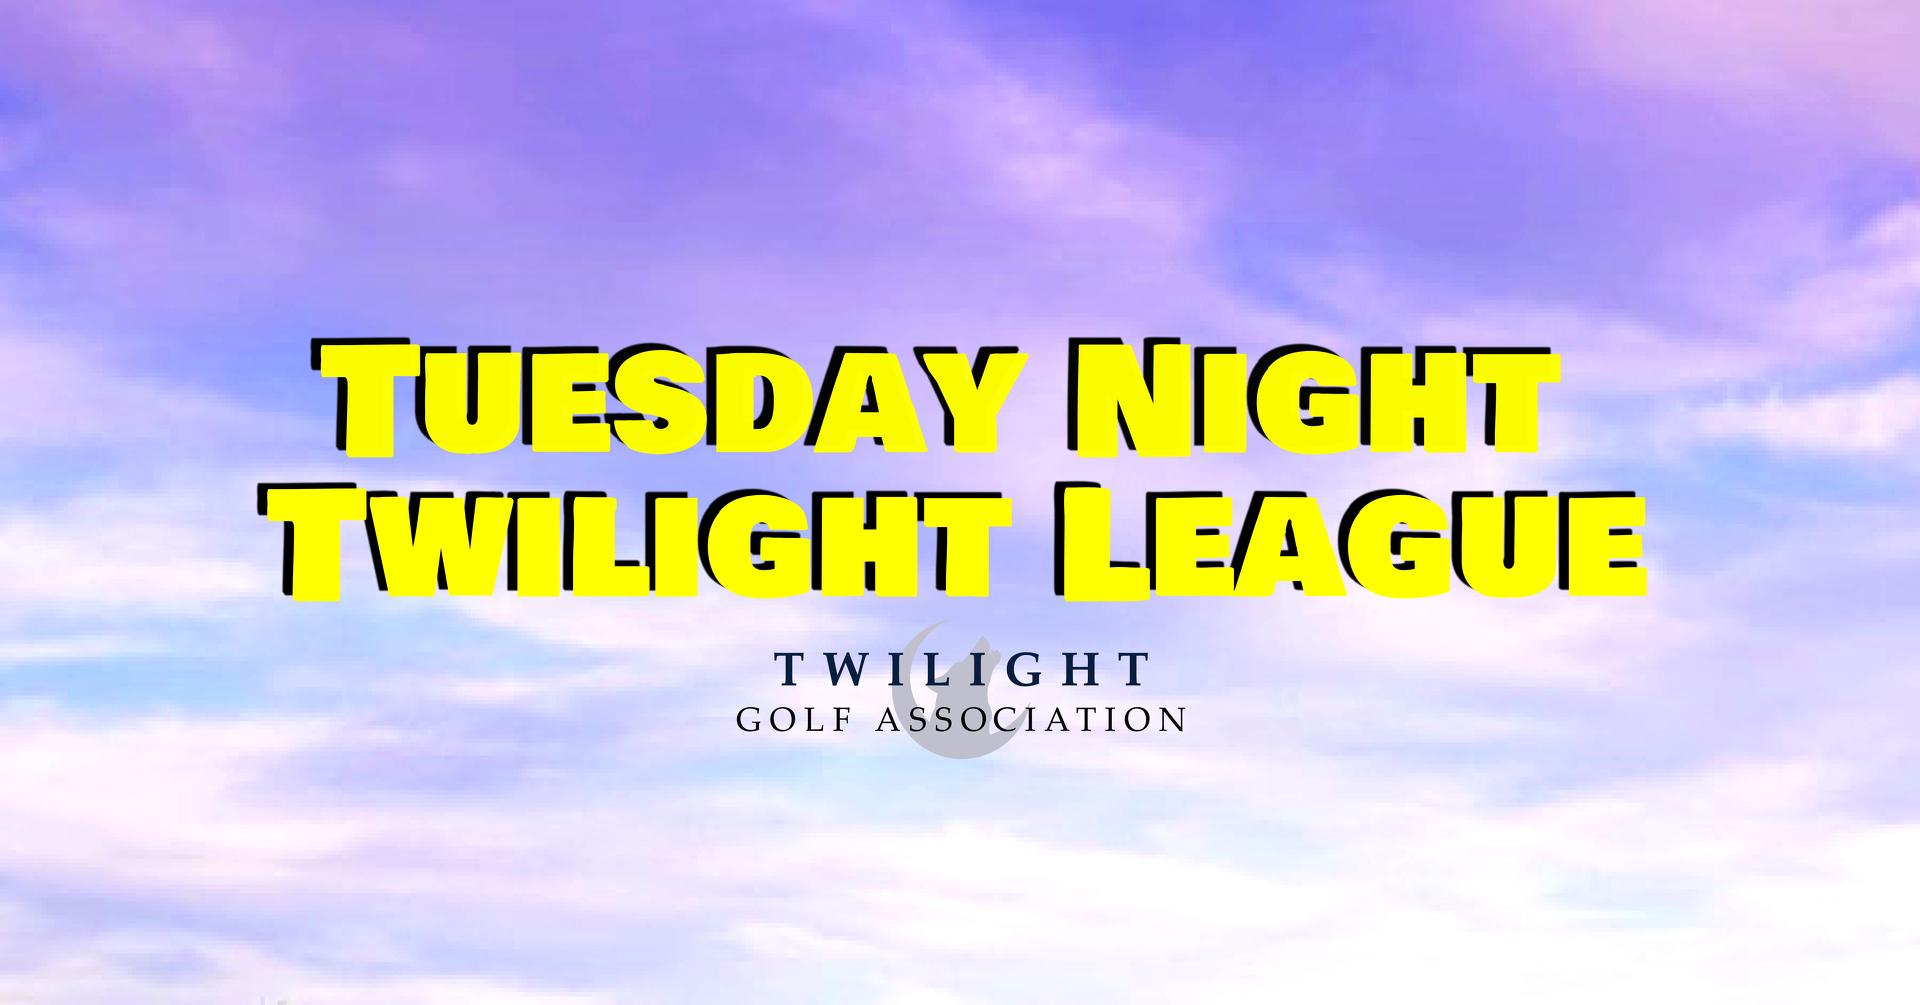 Tuesday Twilight League at Fairways Golf Course